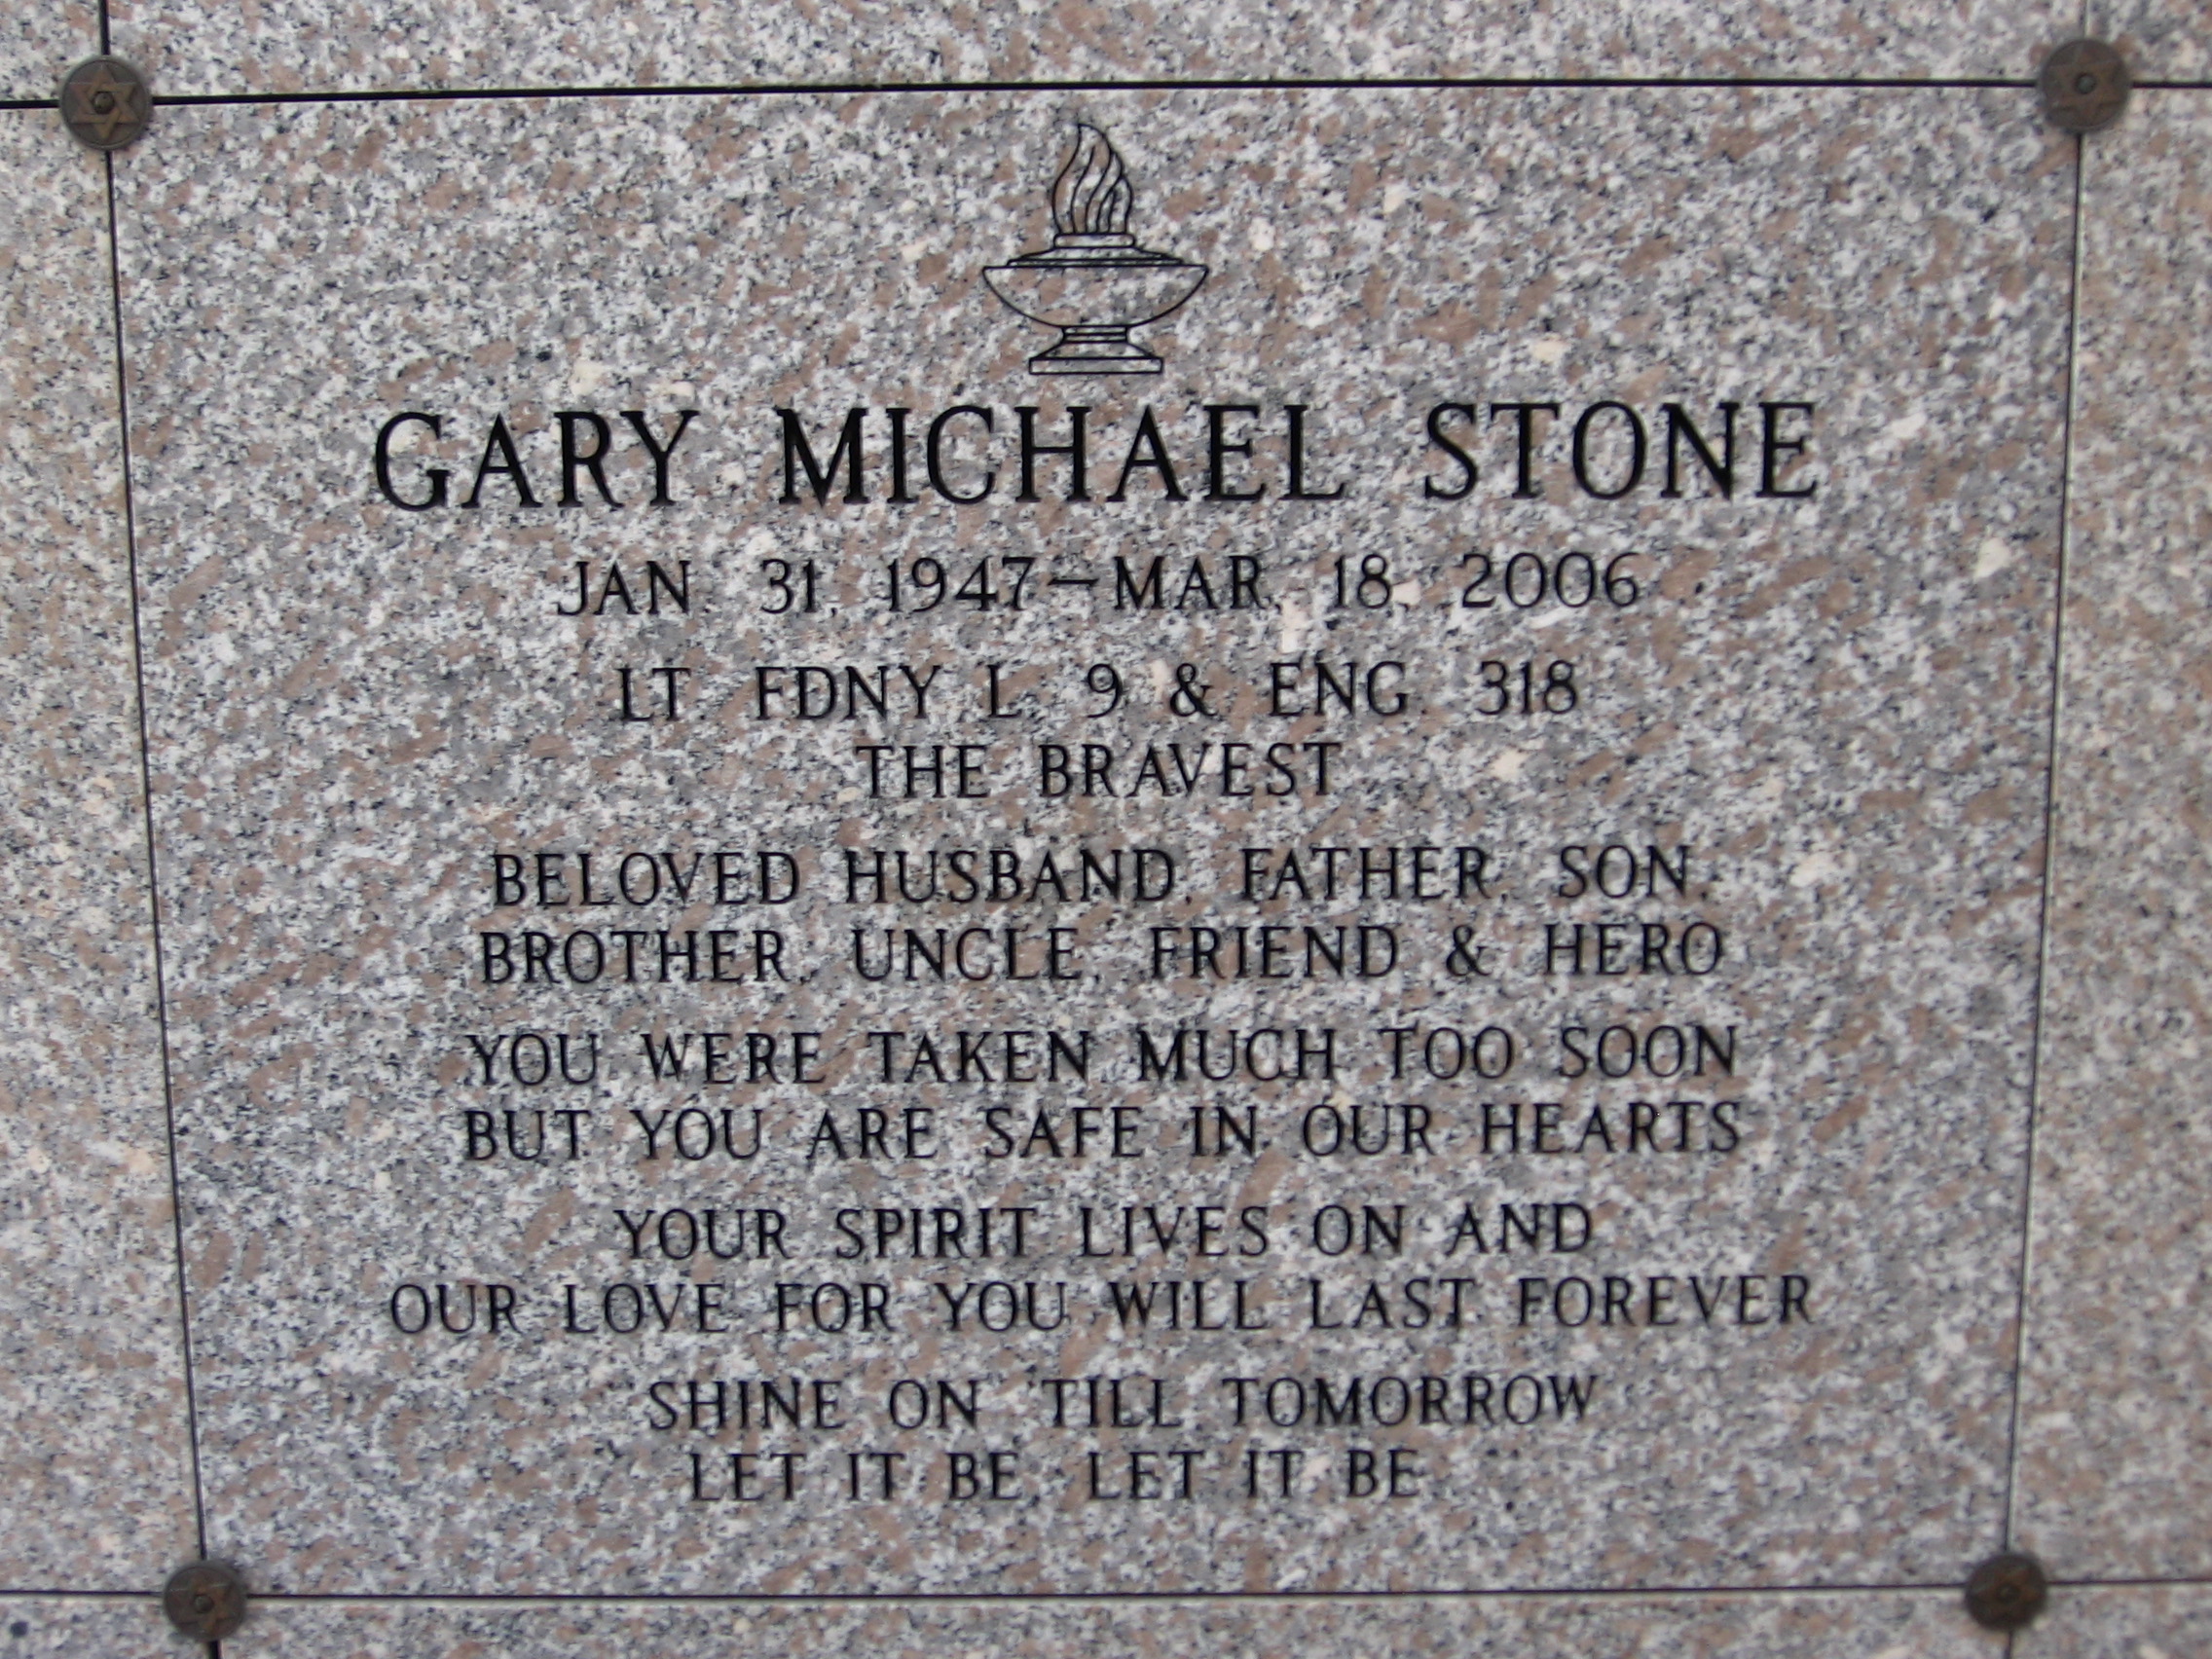 Gary Michael Stone